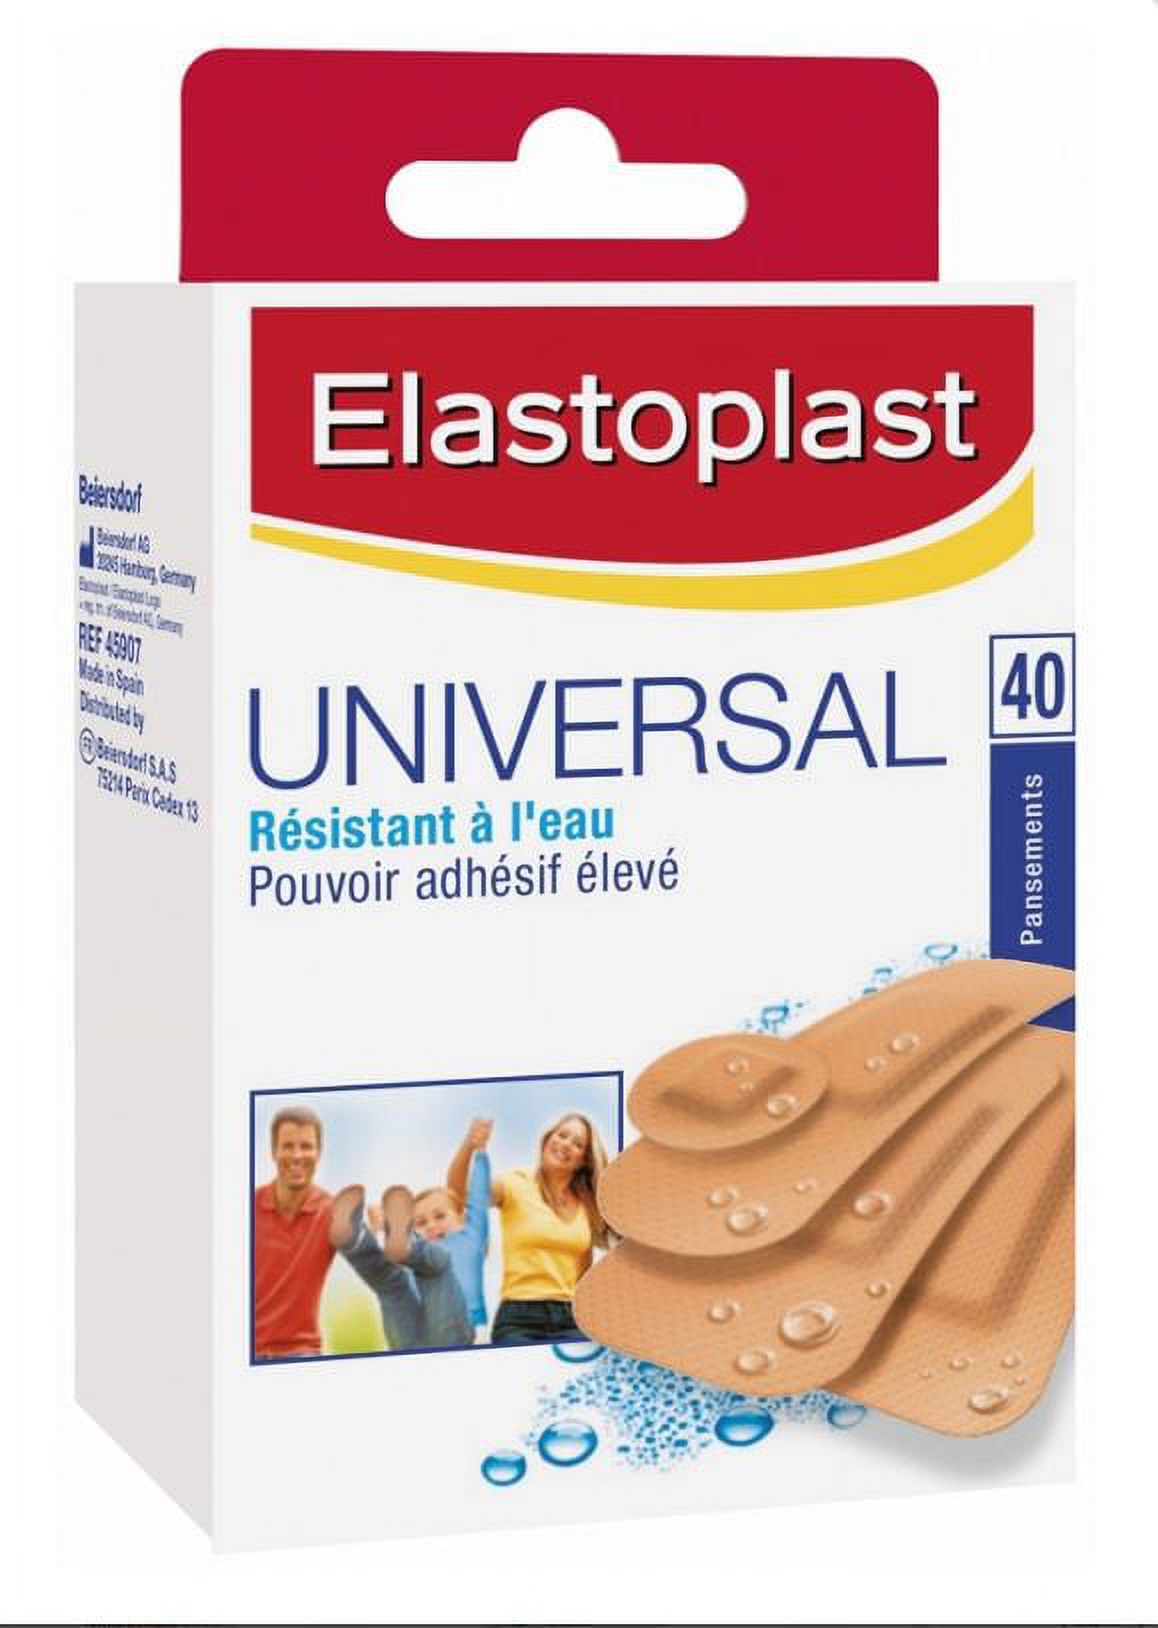 Elastoplast Universal Plasters 40 Plasters 4 Sizes - image 1 of 1